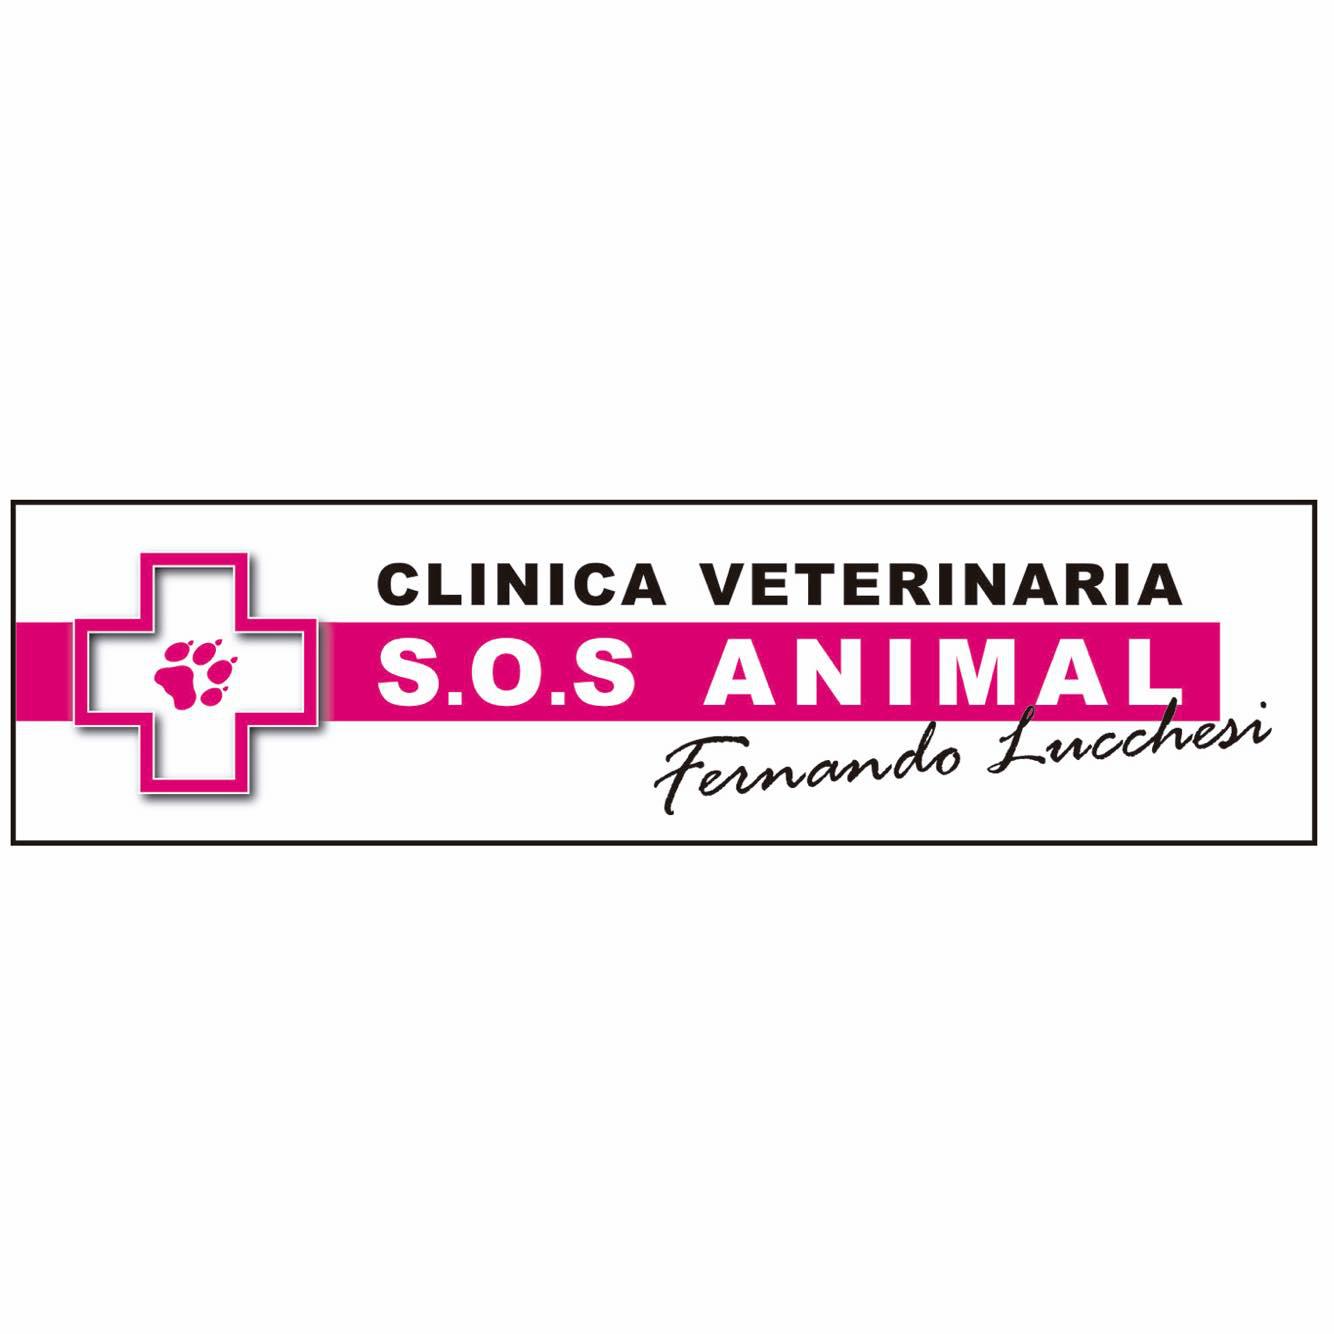 Clinica Veterinaria S.O.S. ANIMAL Fernando Lucchesi Logo